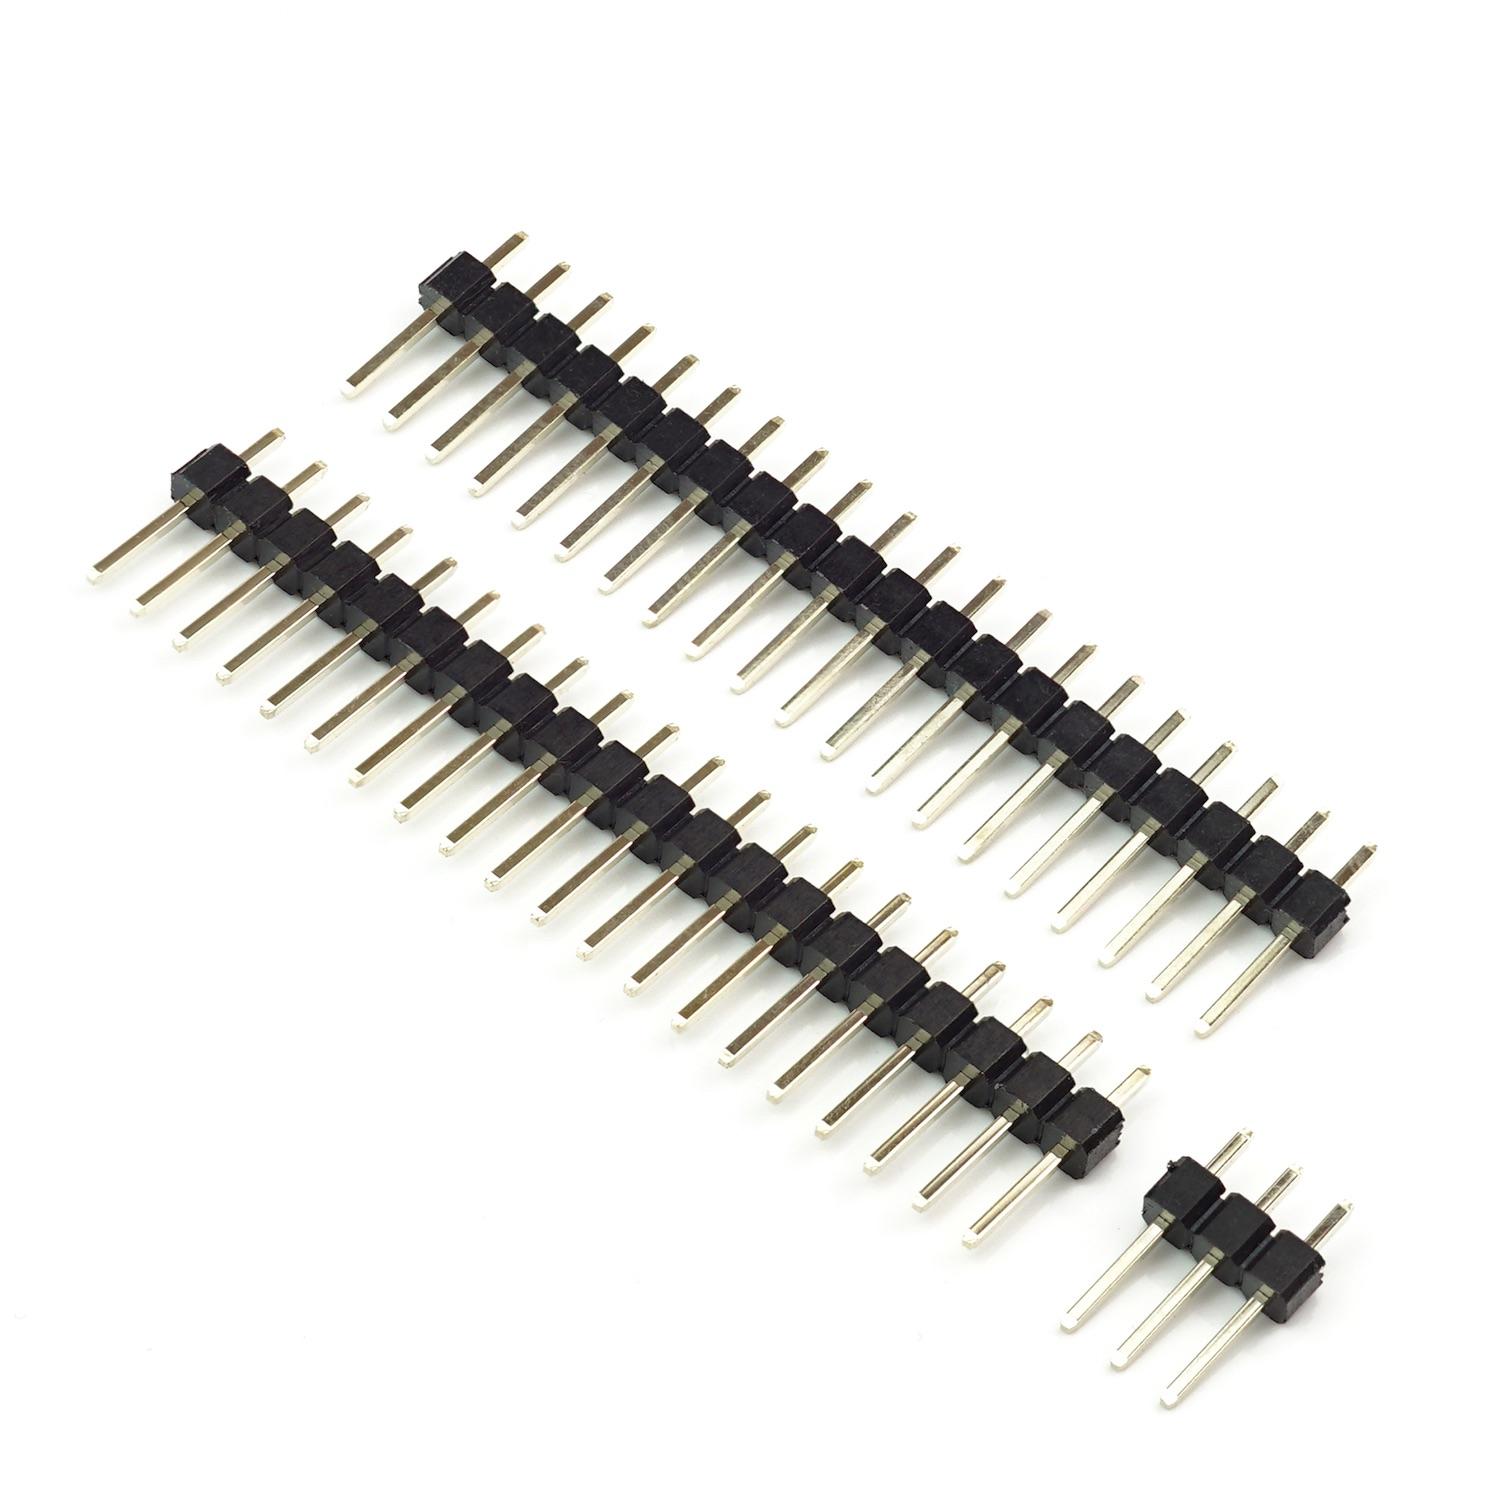 Stiftleisten / Pin Header Set für Raspberry Pi Pico